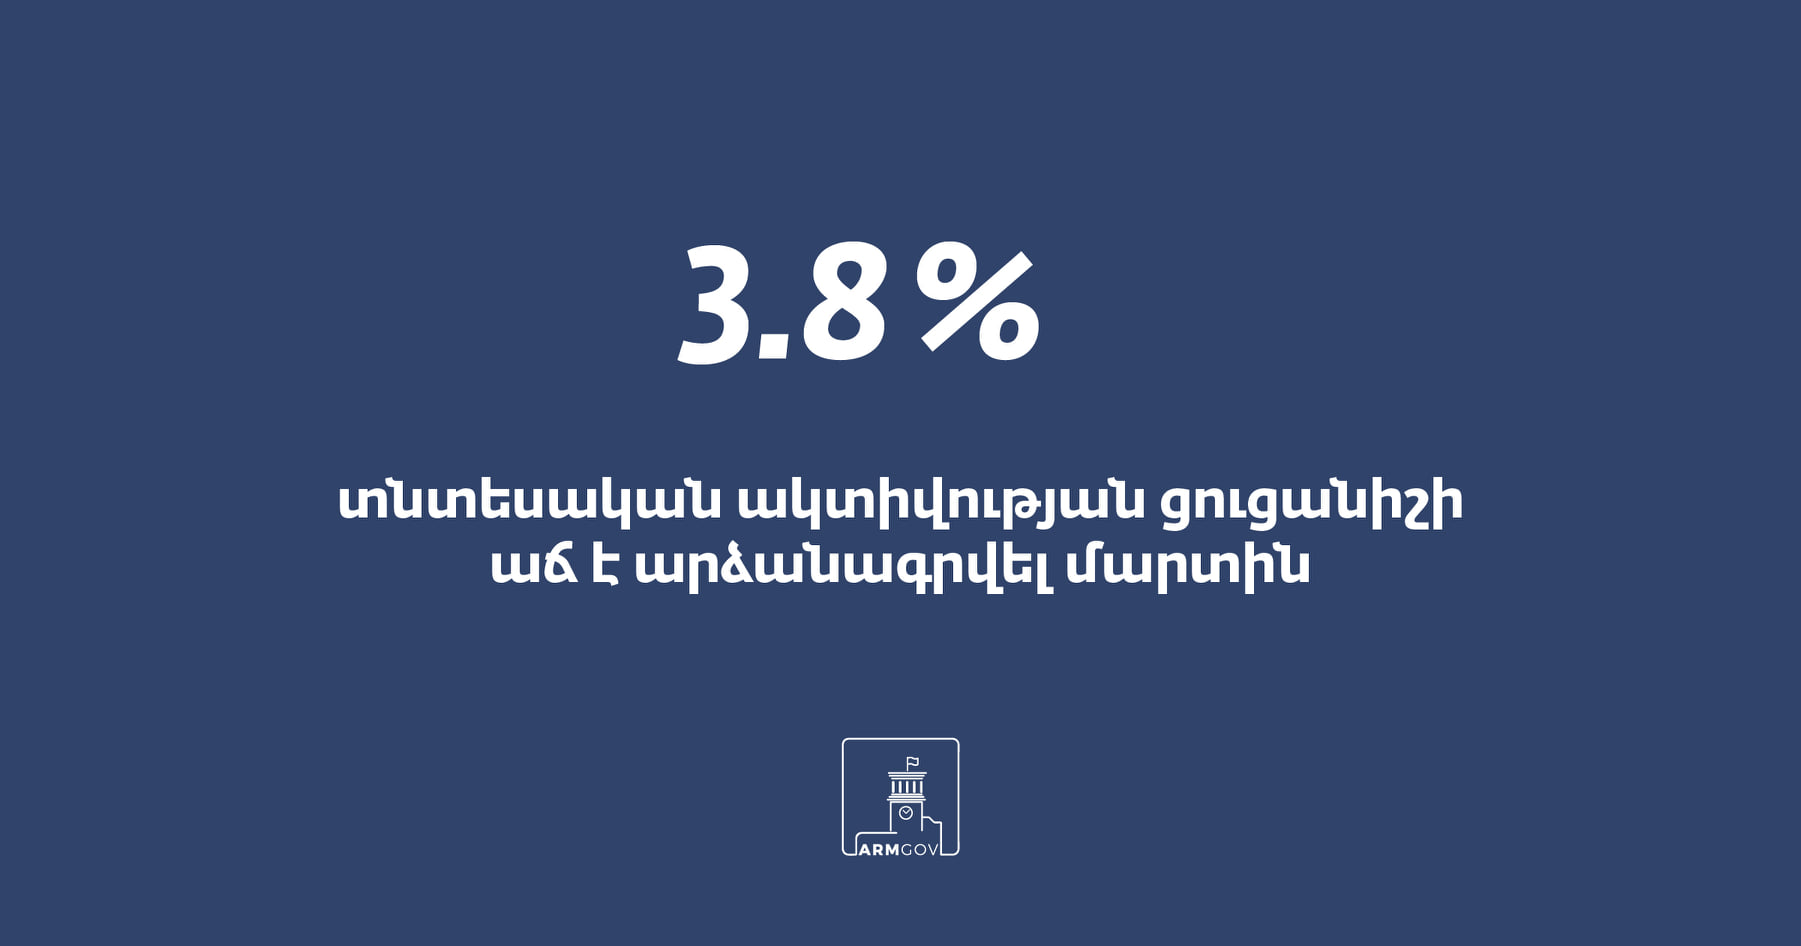 Экономика Армении начала восстанавливаться после коронавирусной рецессии 